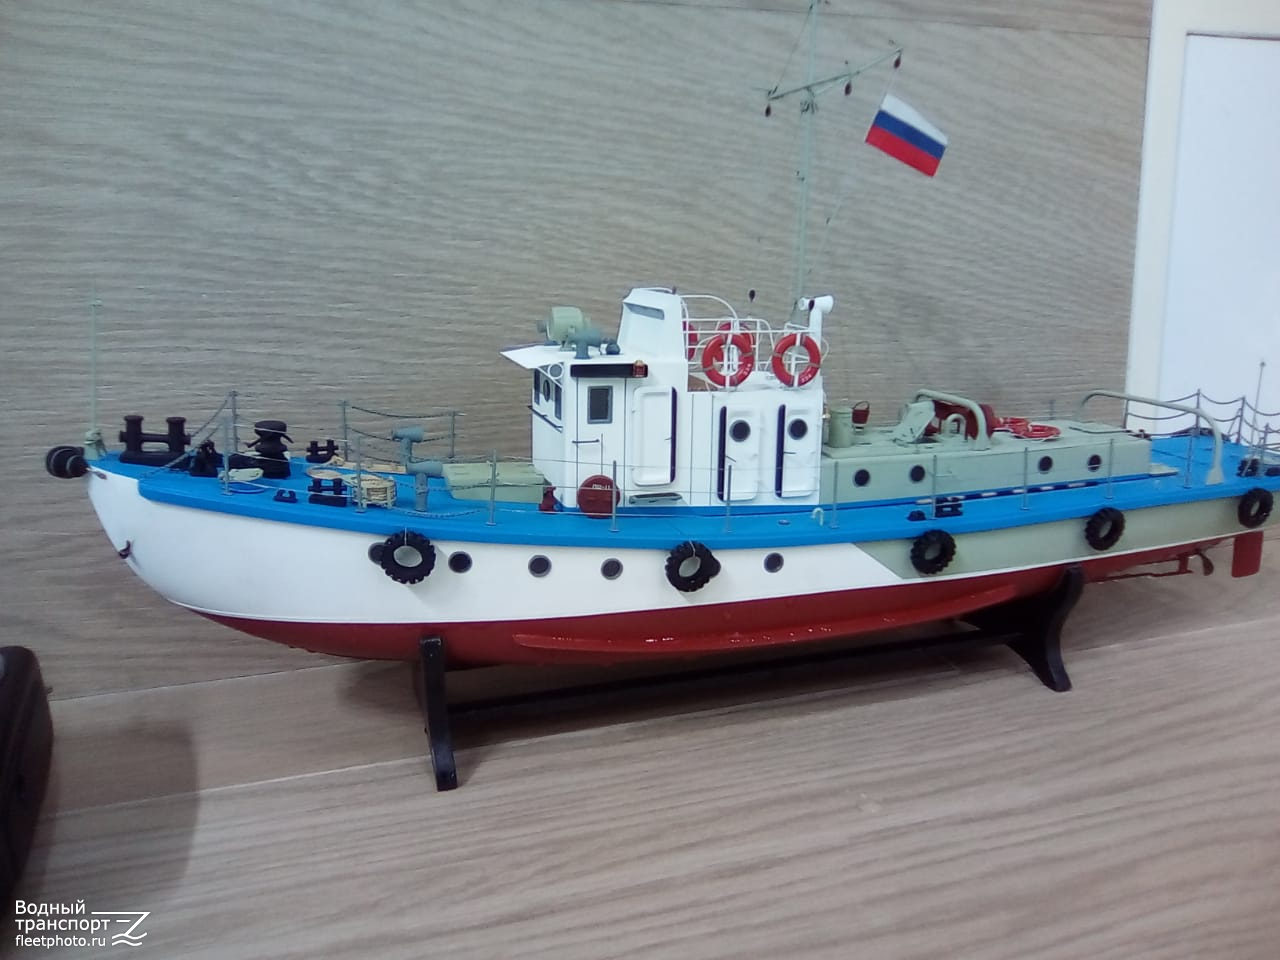 Неопознанное судно - тип Ярославец. Модели гражданских судов